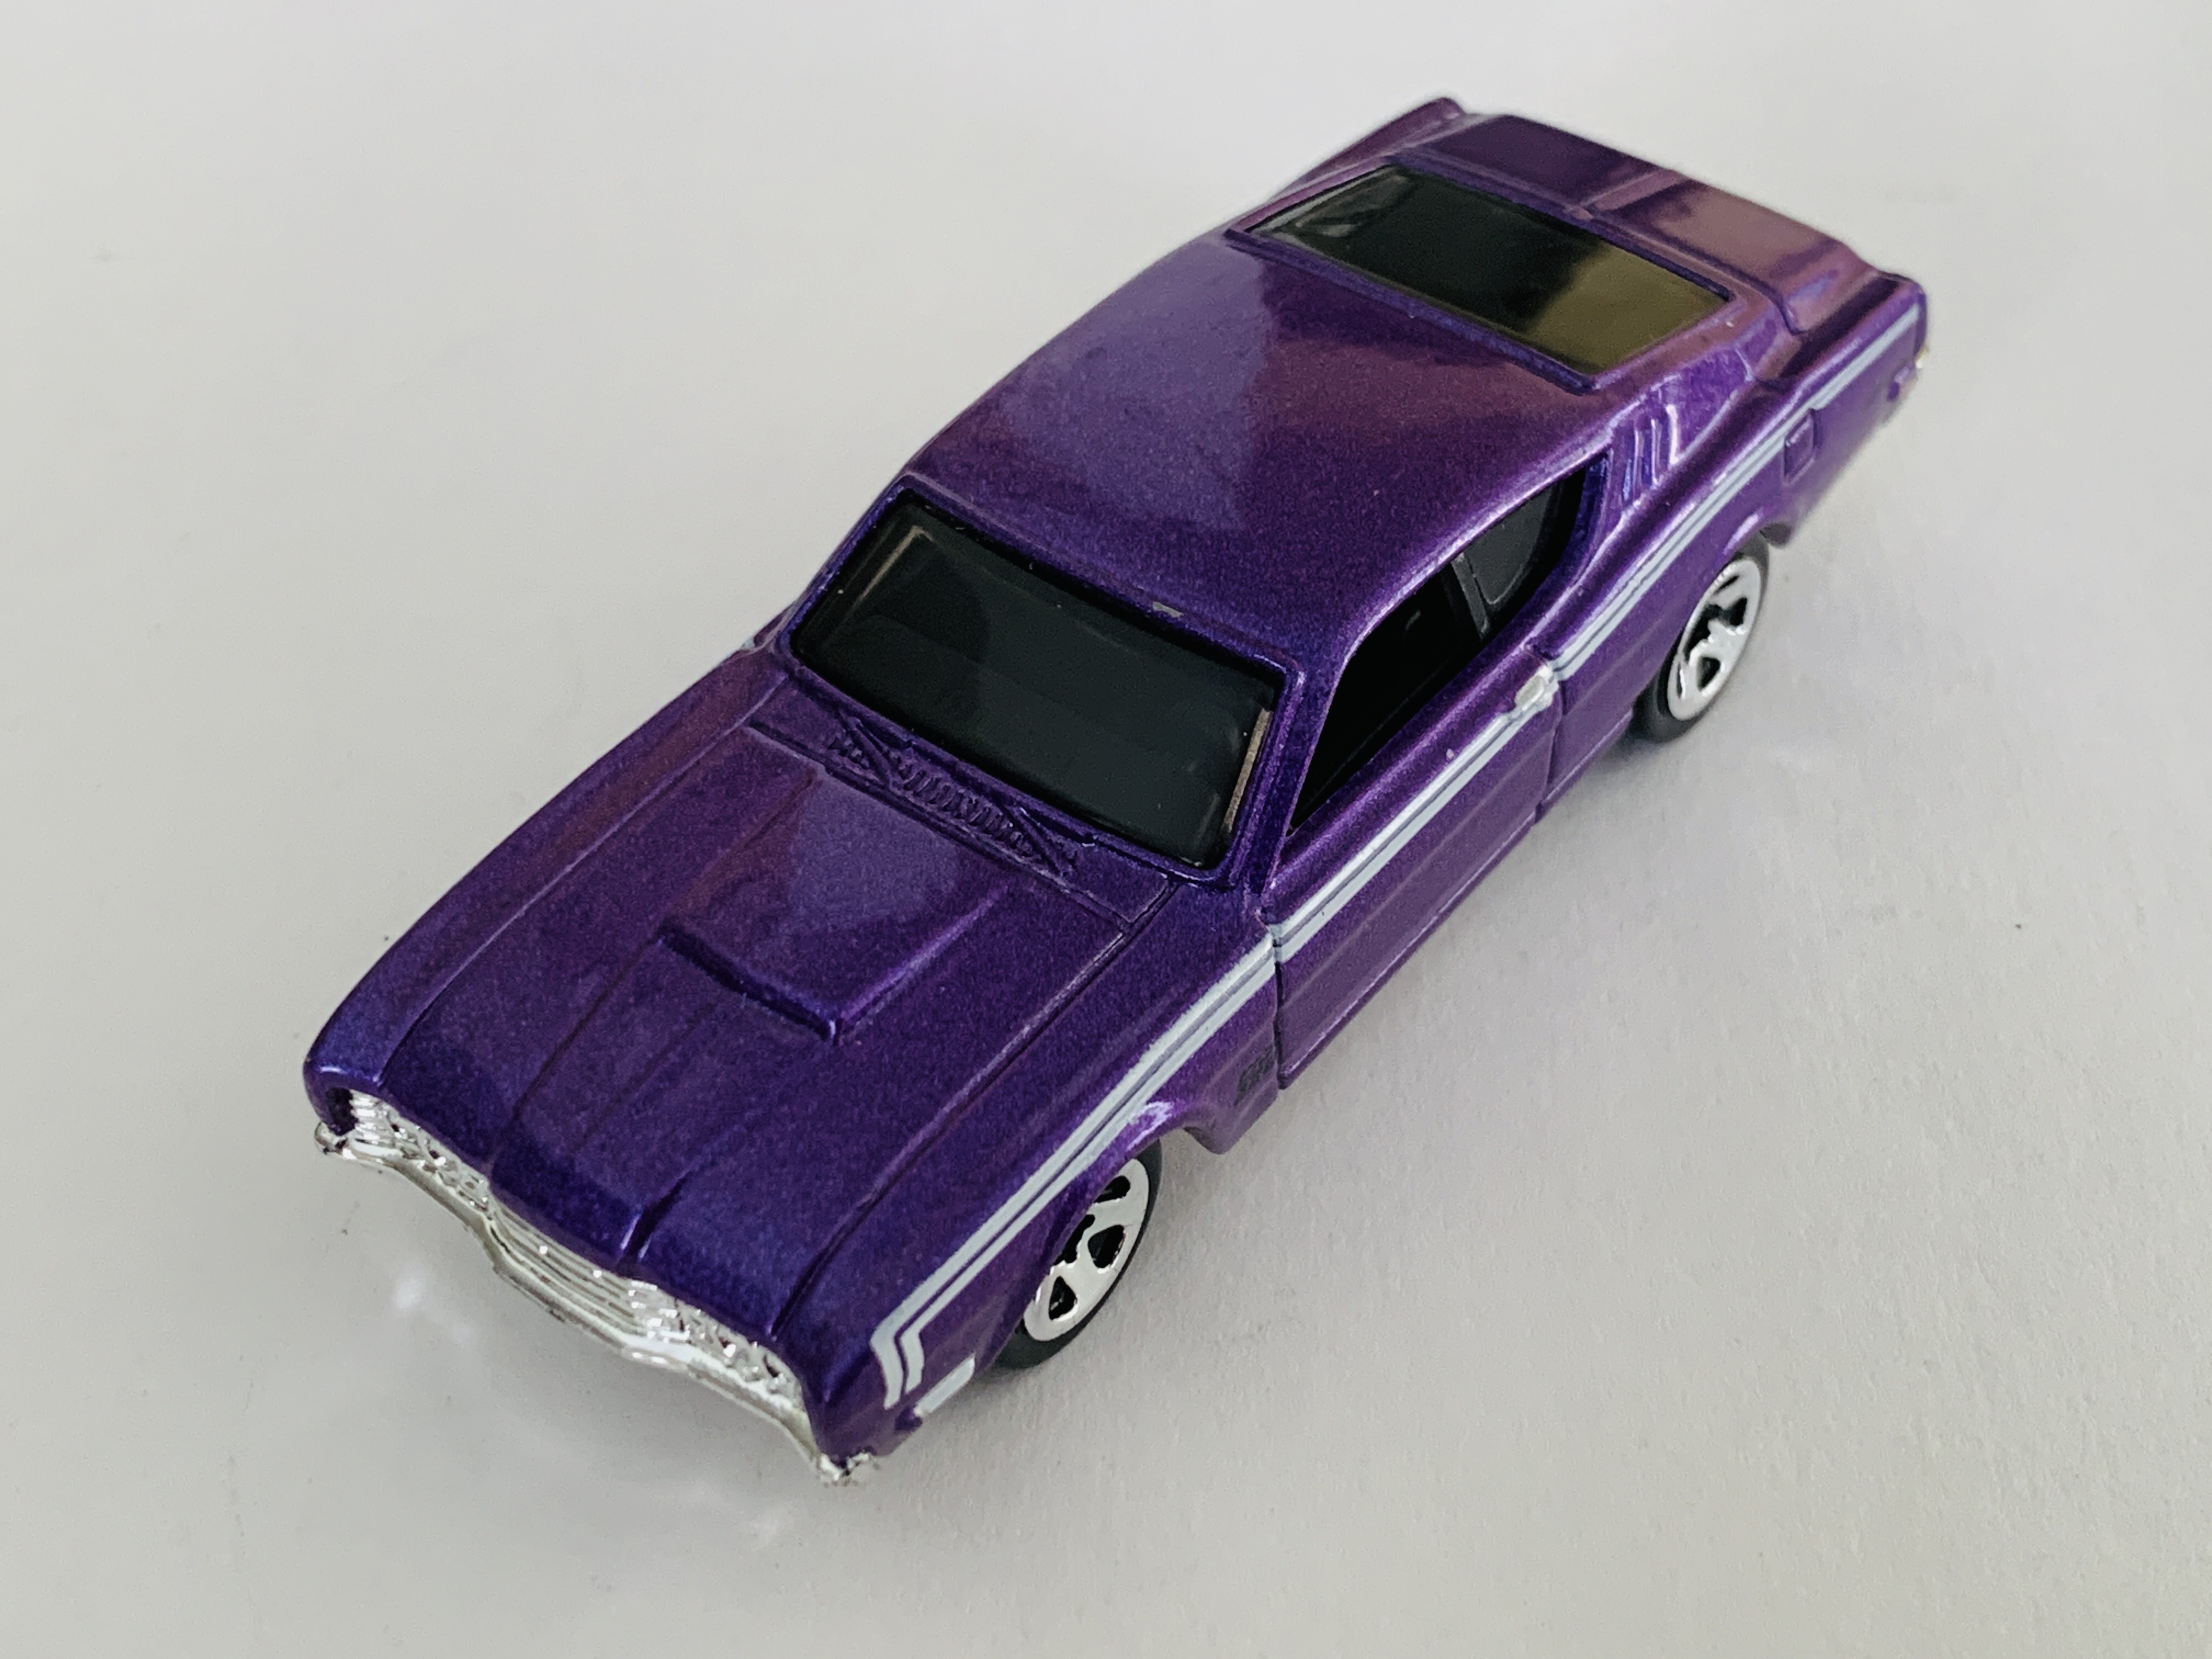 Hot Wheels '69 Mercury Cyclone Multipack Exclusive - Purple